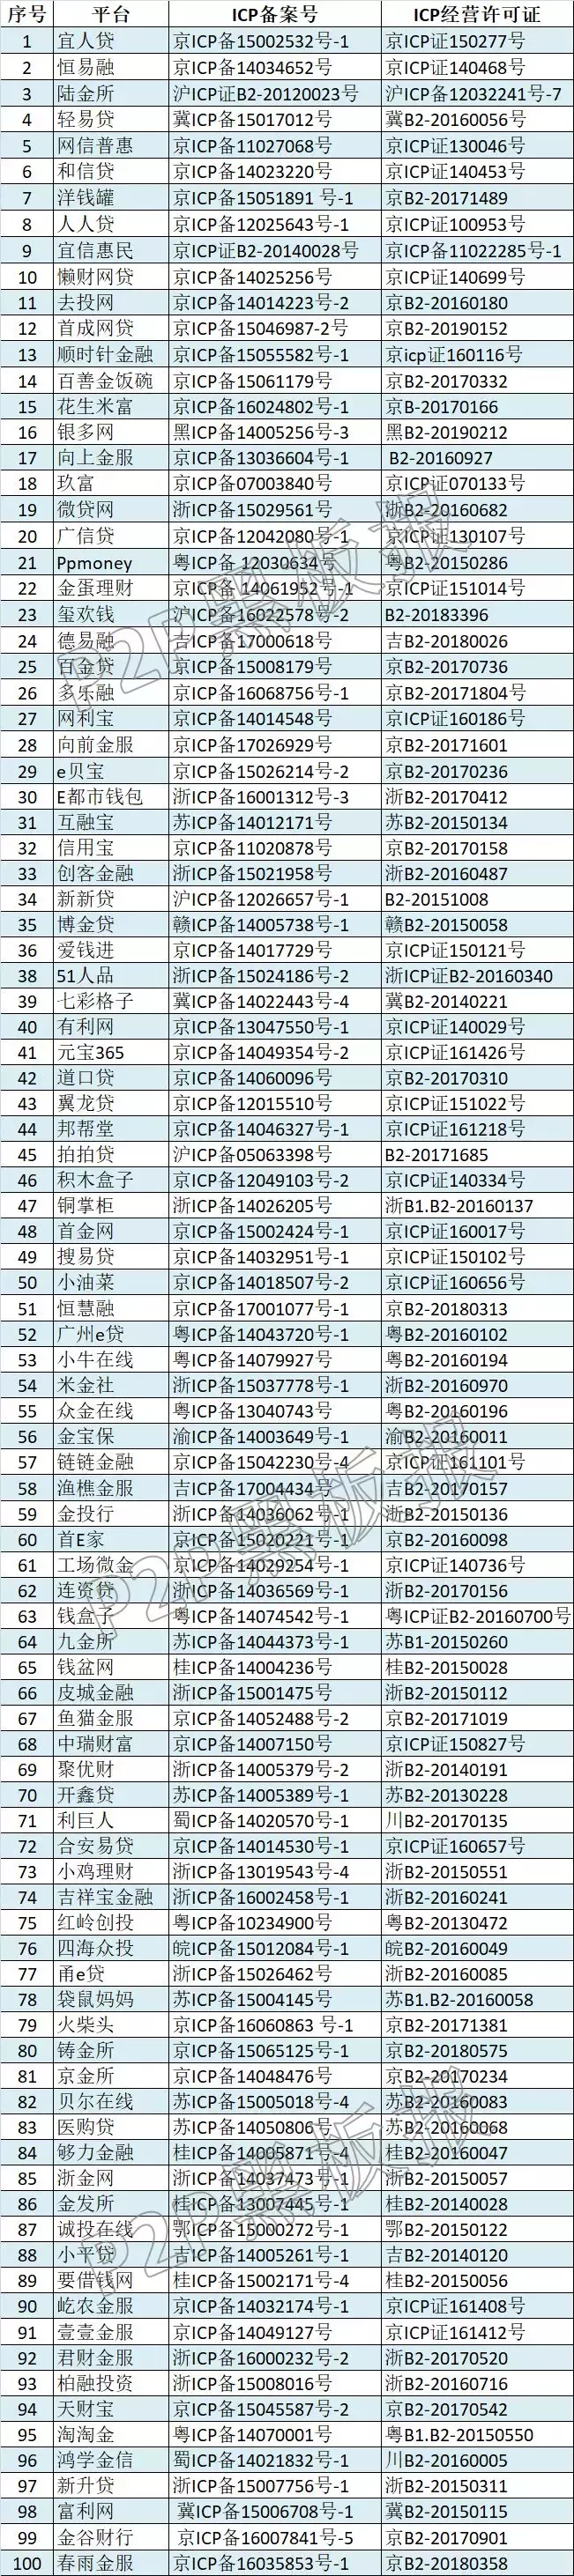 同时具备ICP许可证和ICP备案的P2P平台仅225家（附名单）